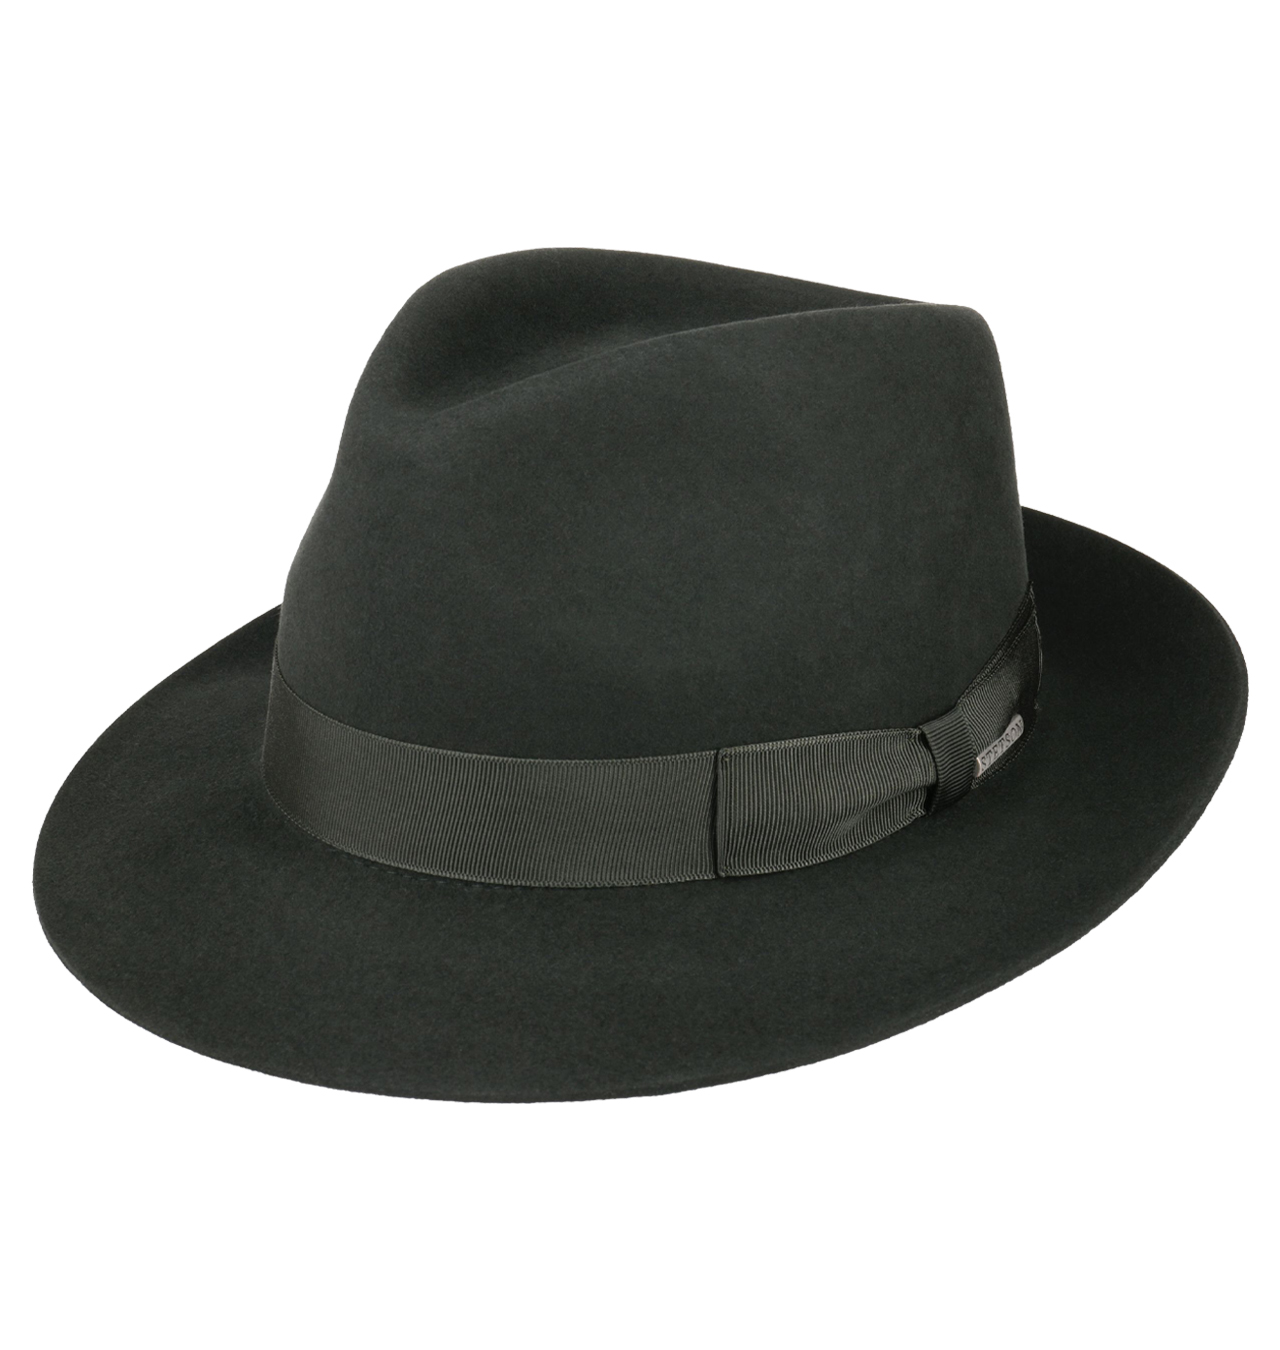 Stetson - Penn Bogart Hat - Dark Olive